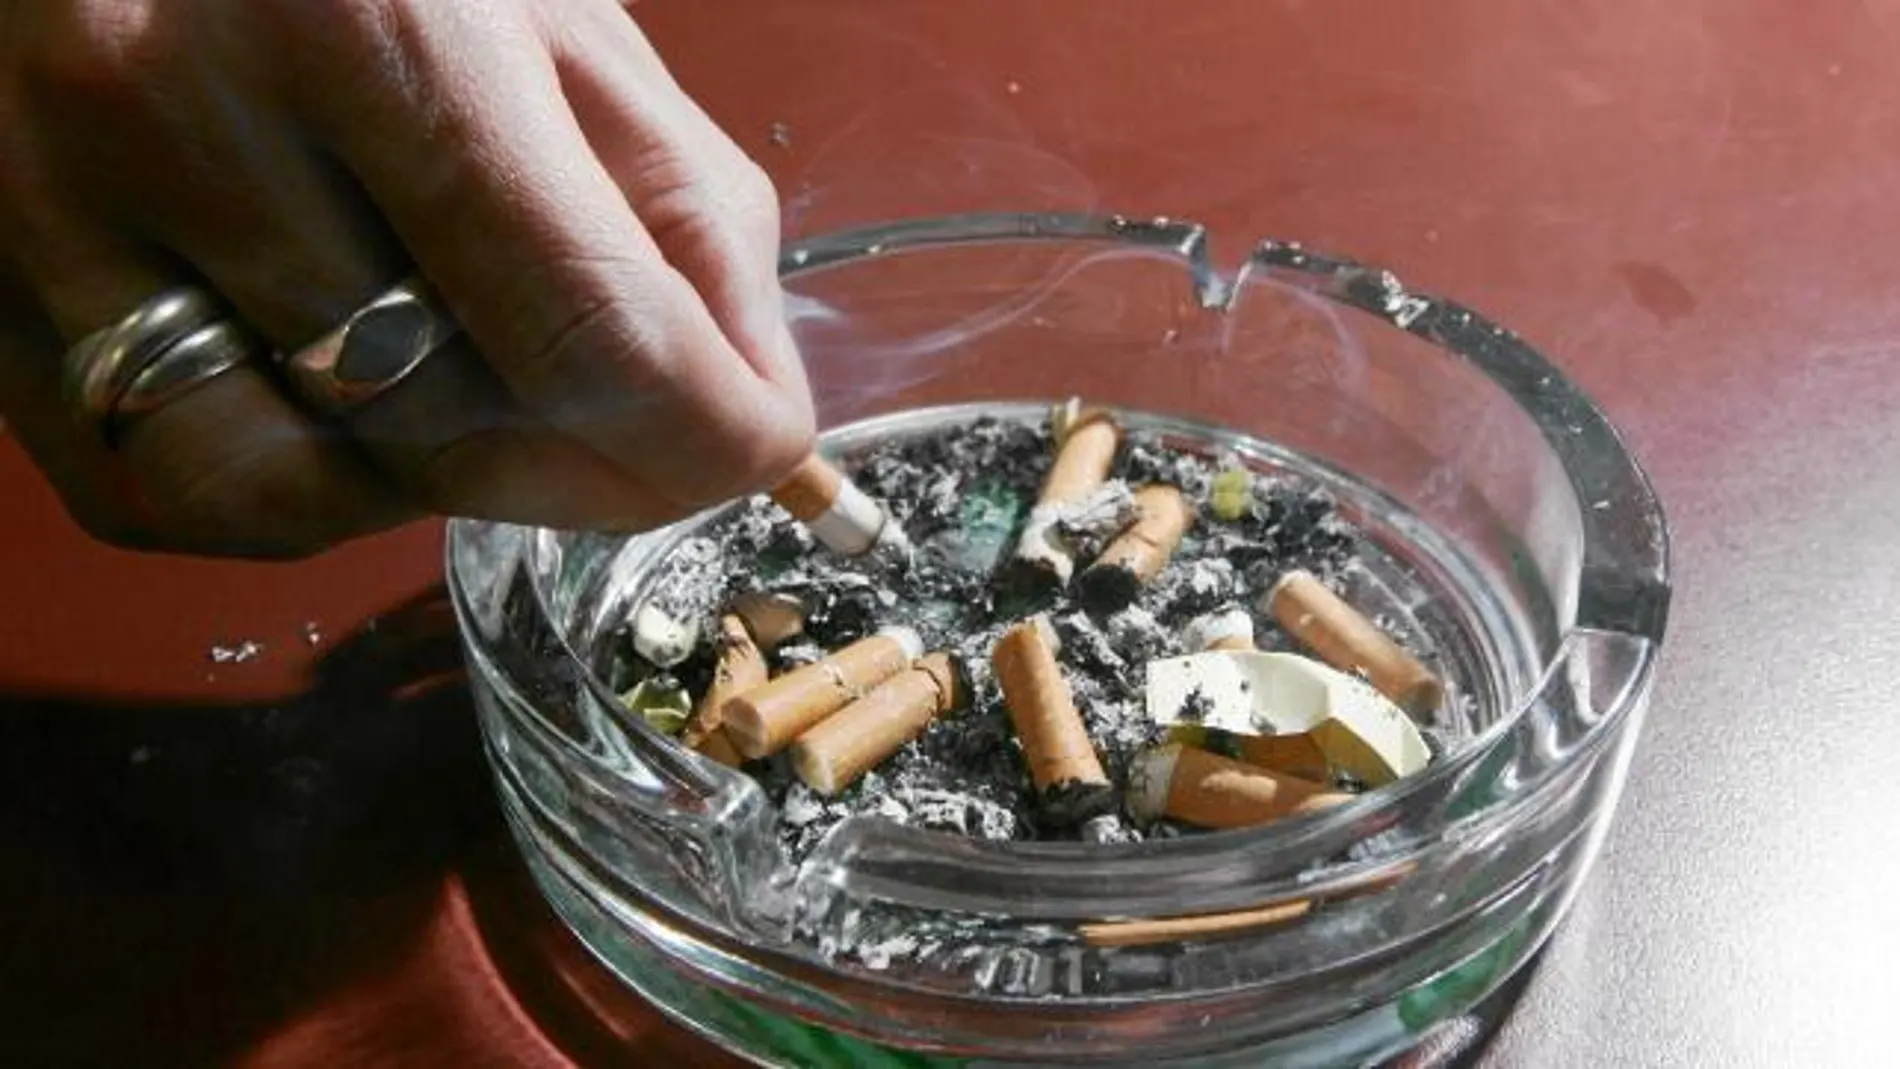 El 10,8% de los fumadores aumentó el consumo durante el confinamiento